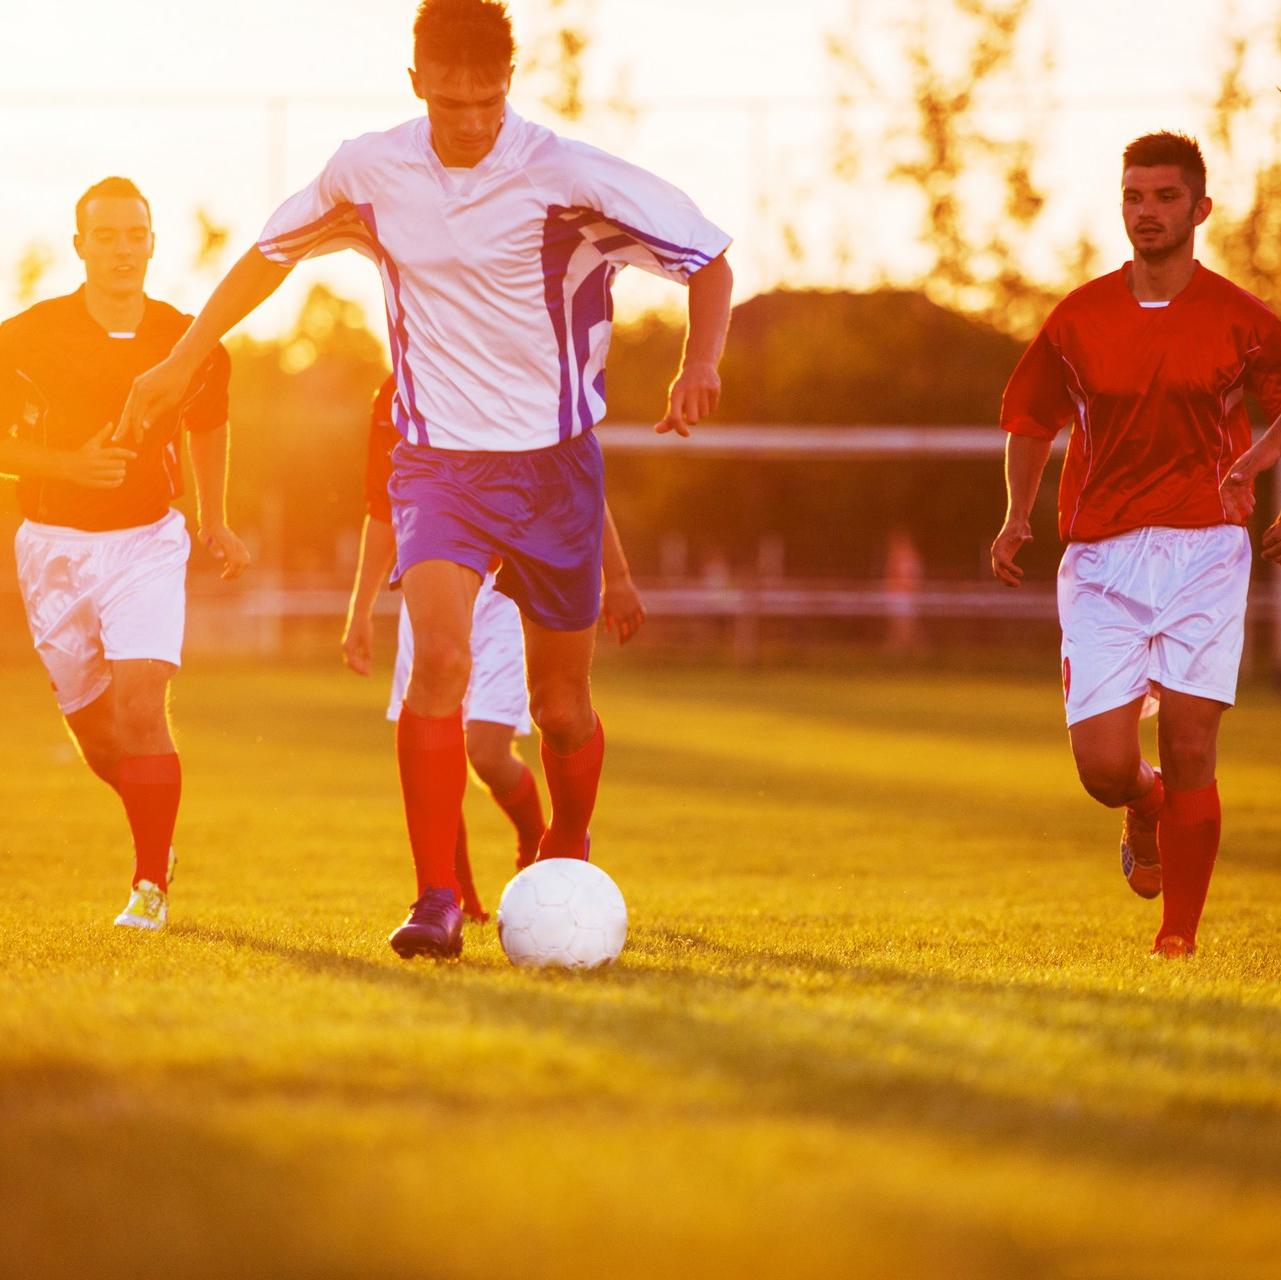 Football : populaire et bon pour la santé